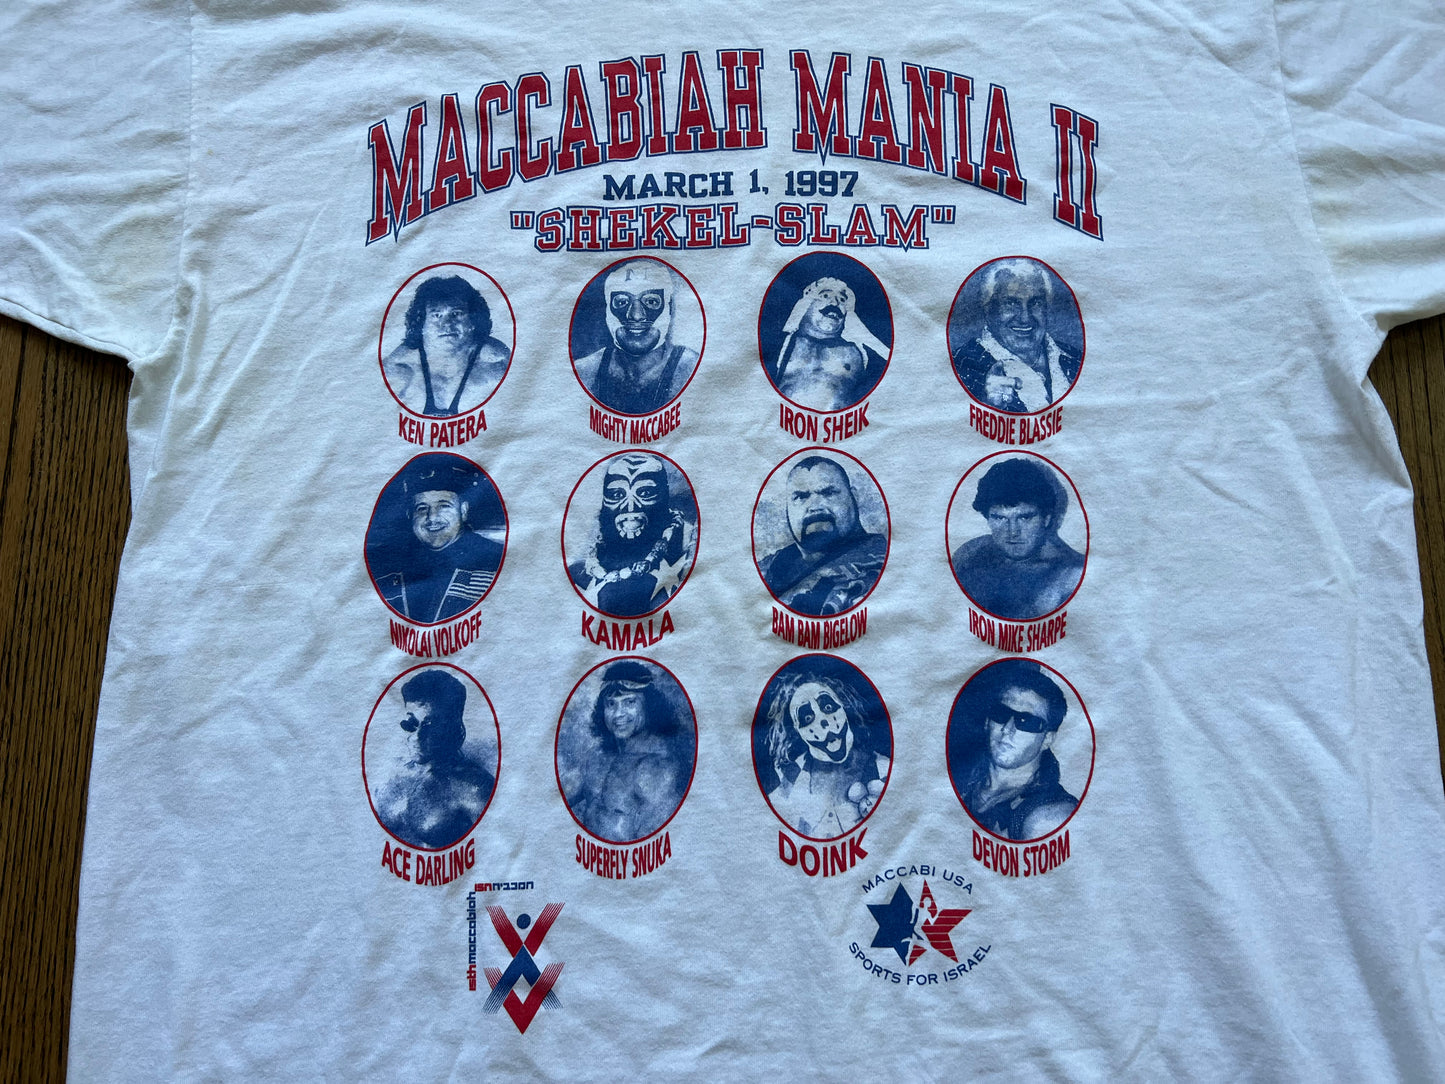 1997 Maccabiah mania shirt